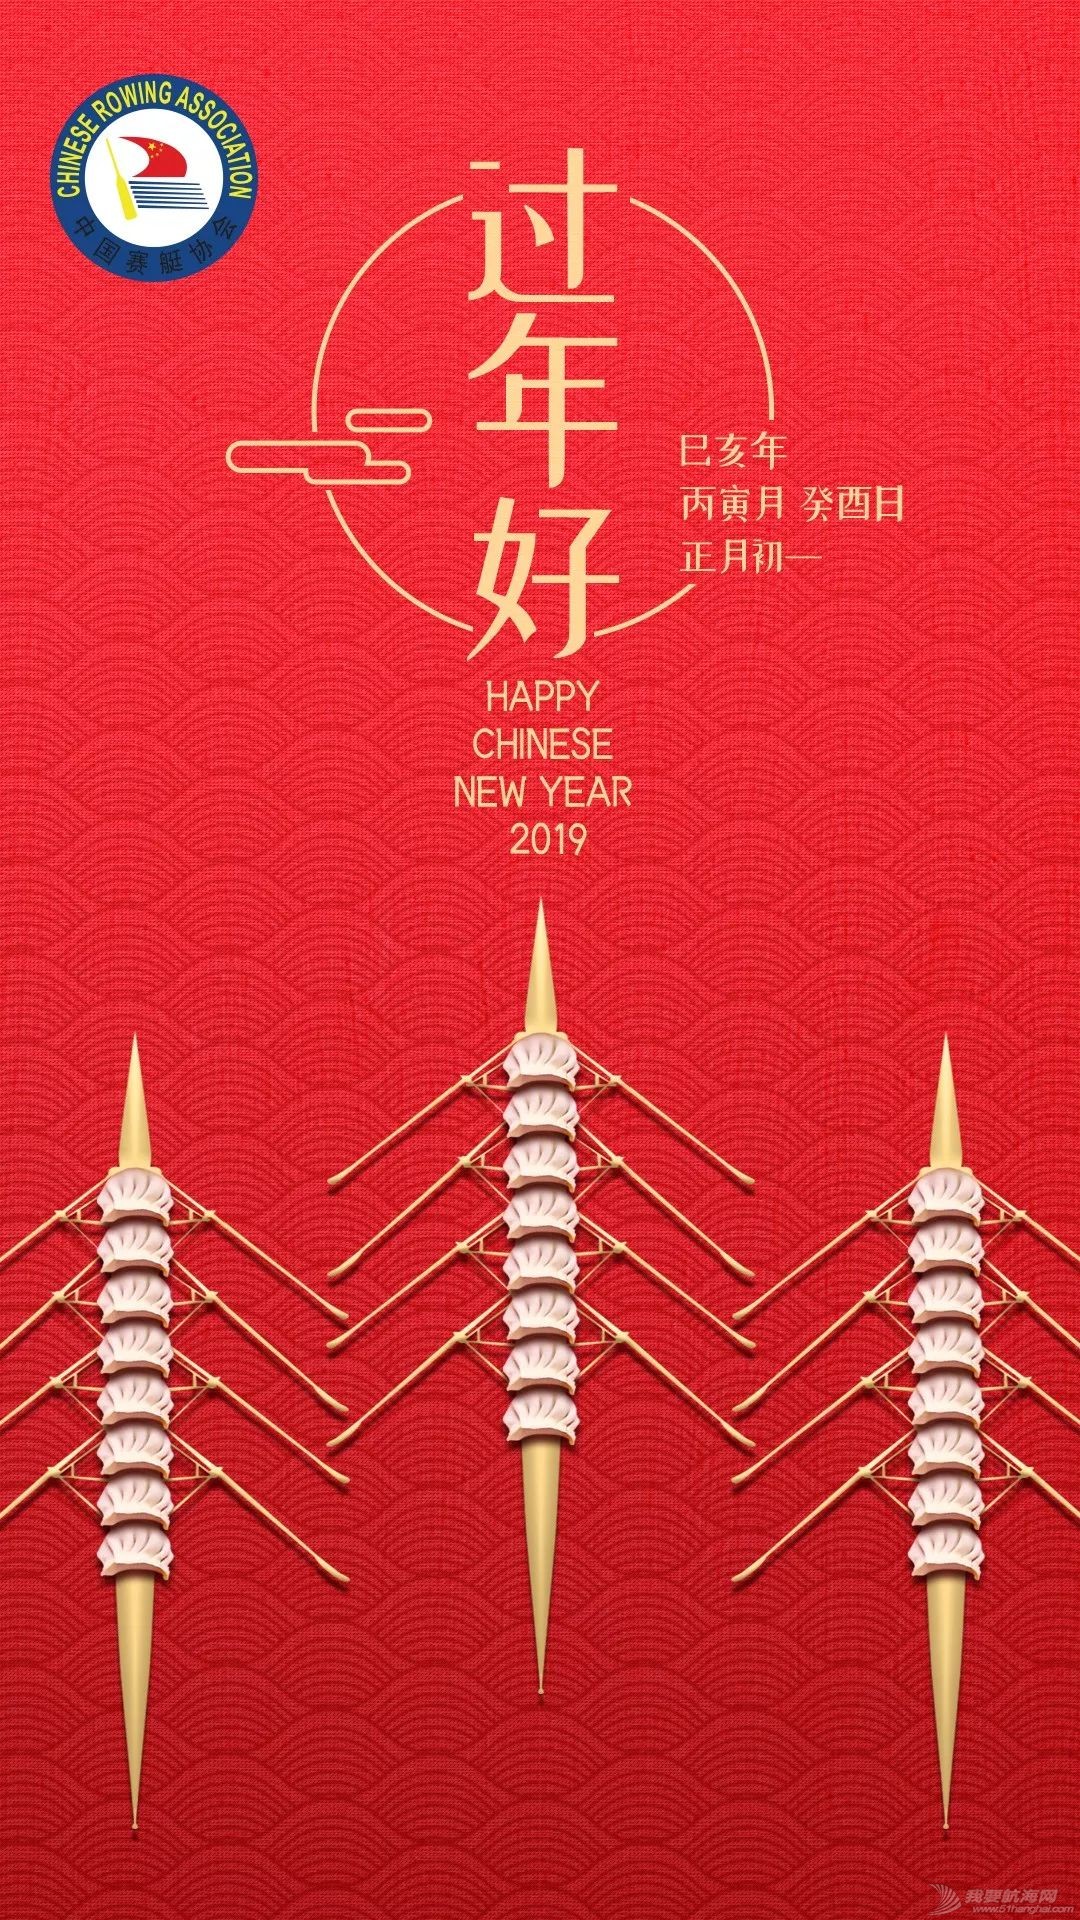 新年快乐!中国赛艇队、中国皮划艇队有爱送祝福啦!w3.jpg